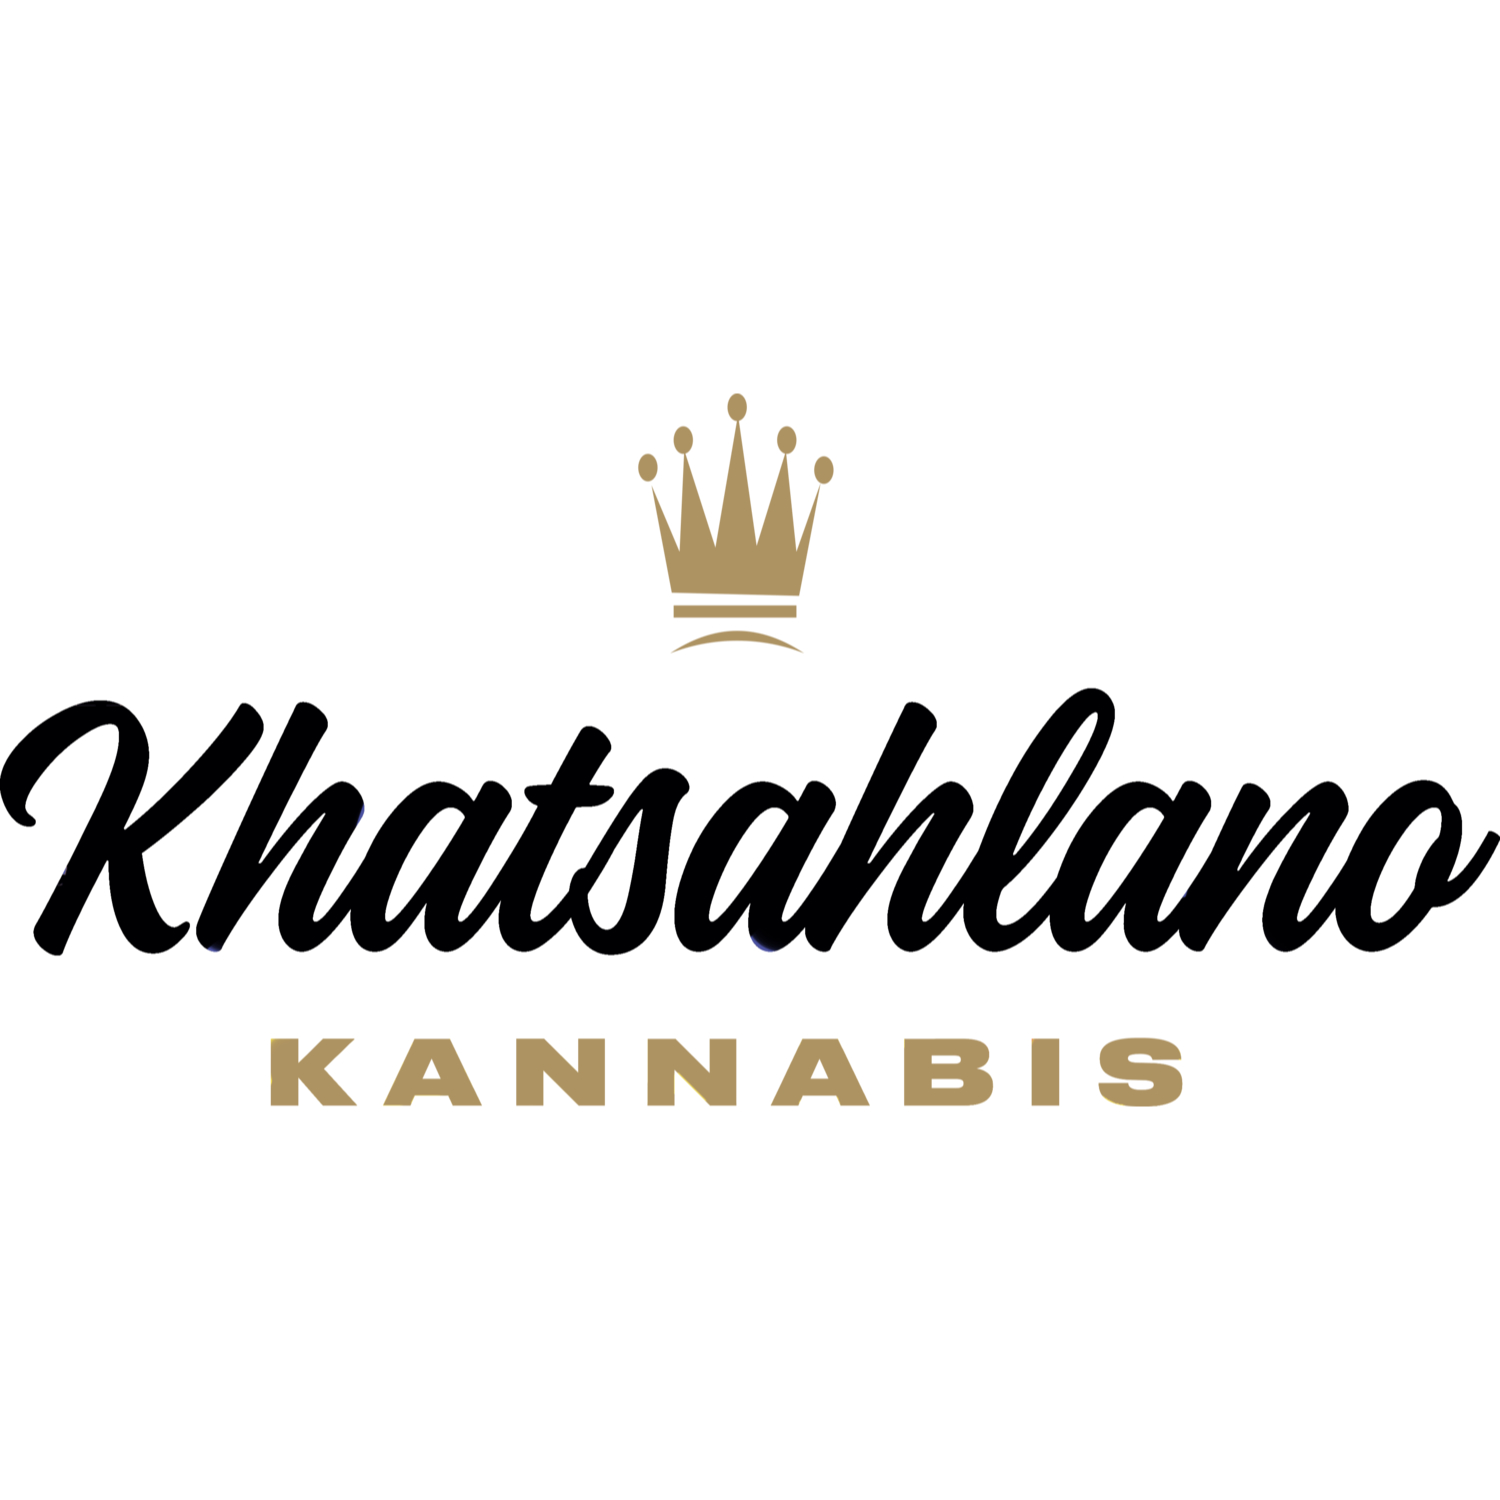 Khatsahlano Kannabis Weed Dispensary Vancouver - Medical Marijuana